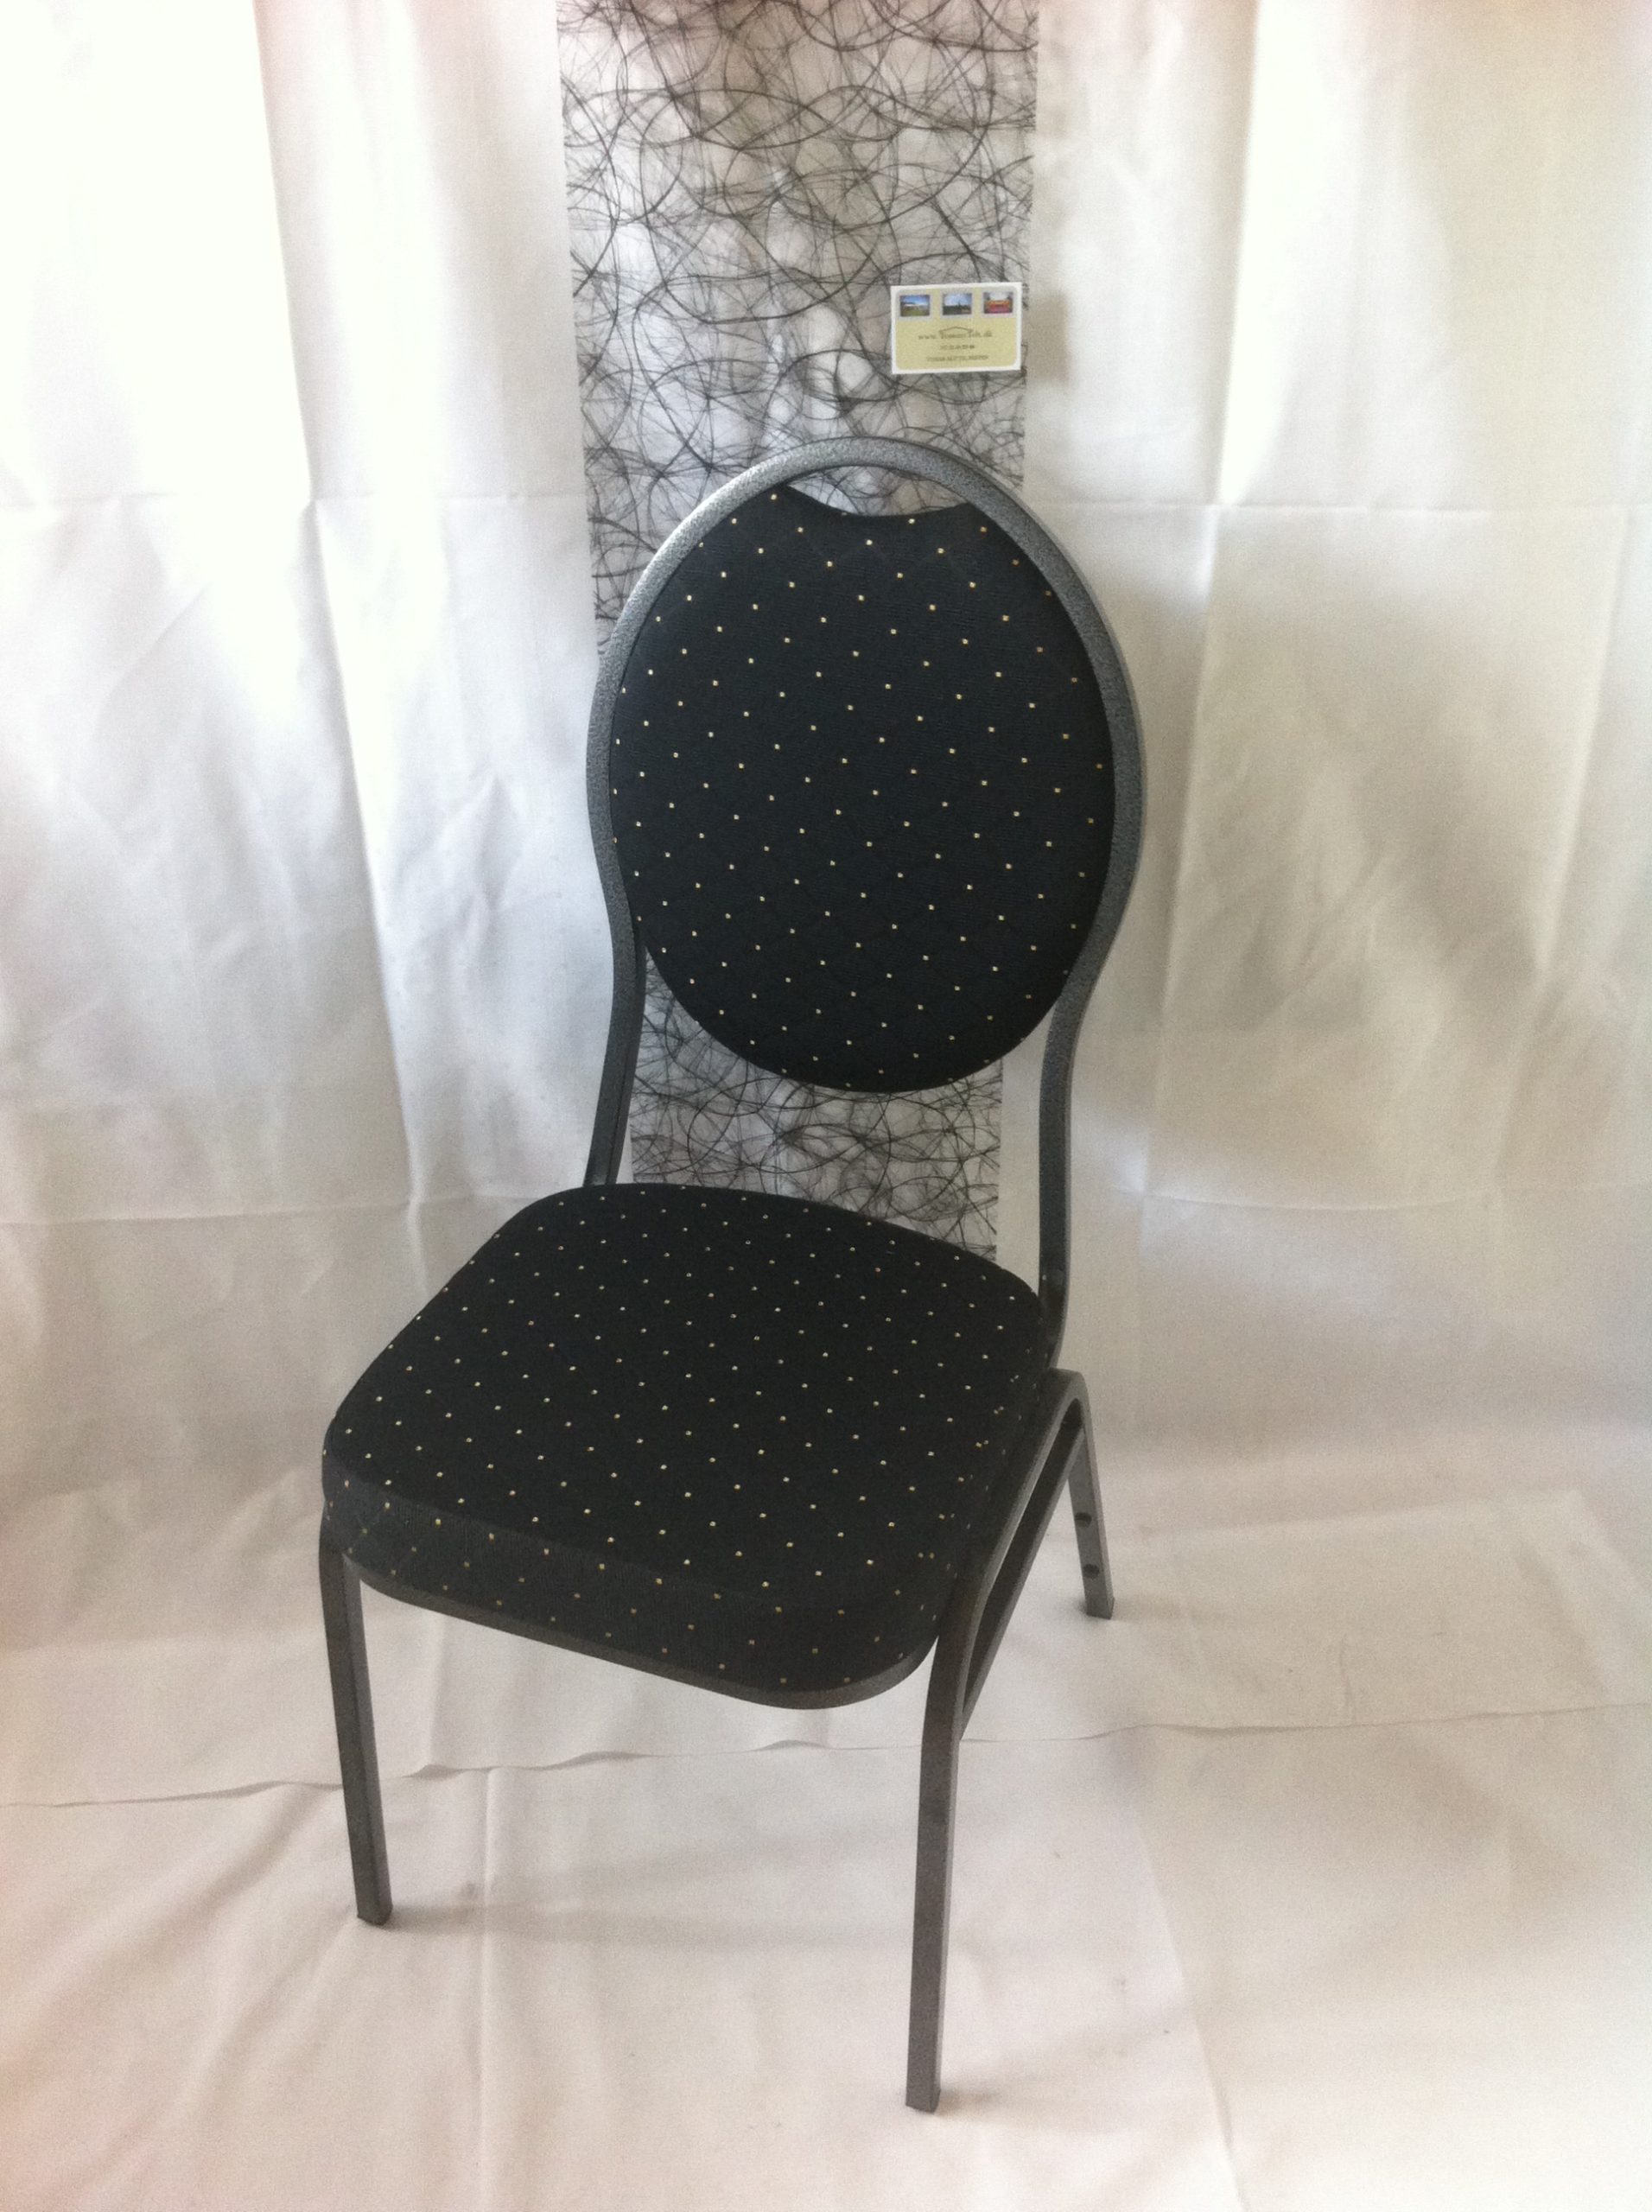 En flot banquetstol i sort overtræk med hvide prikker på. Et klassisk stilfuldt og yndigt mønster.